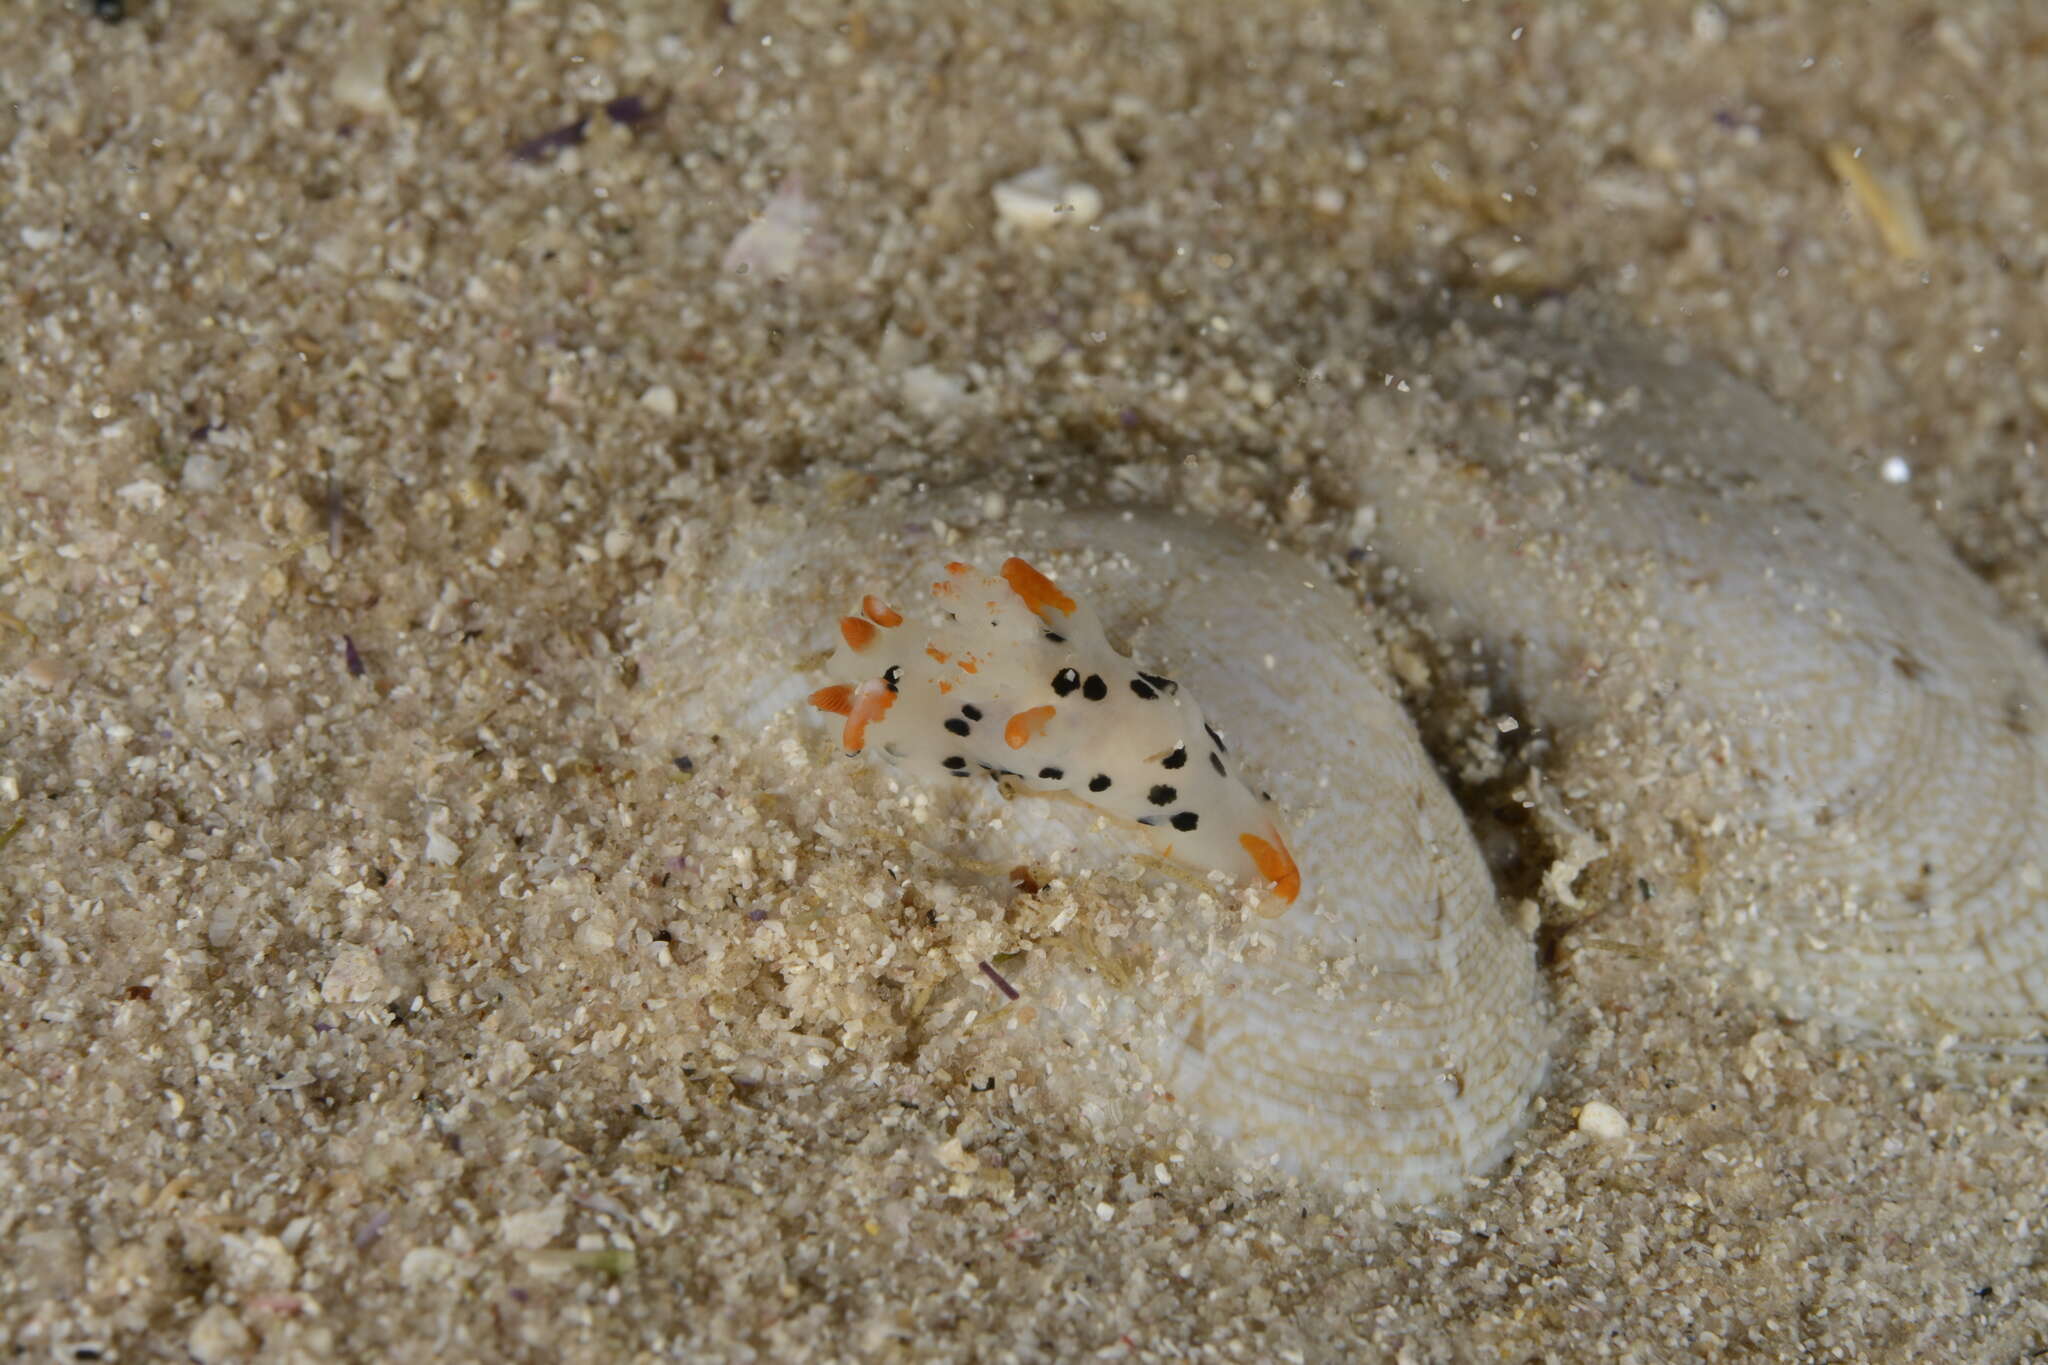 Image of Sea slug